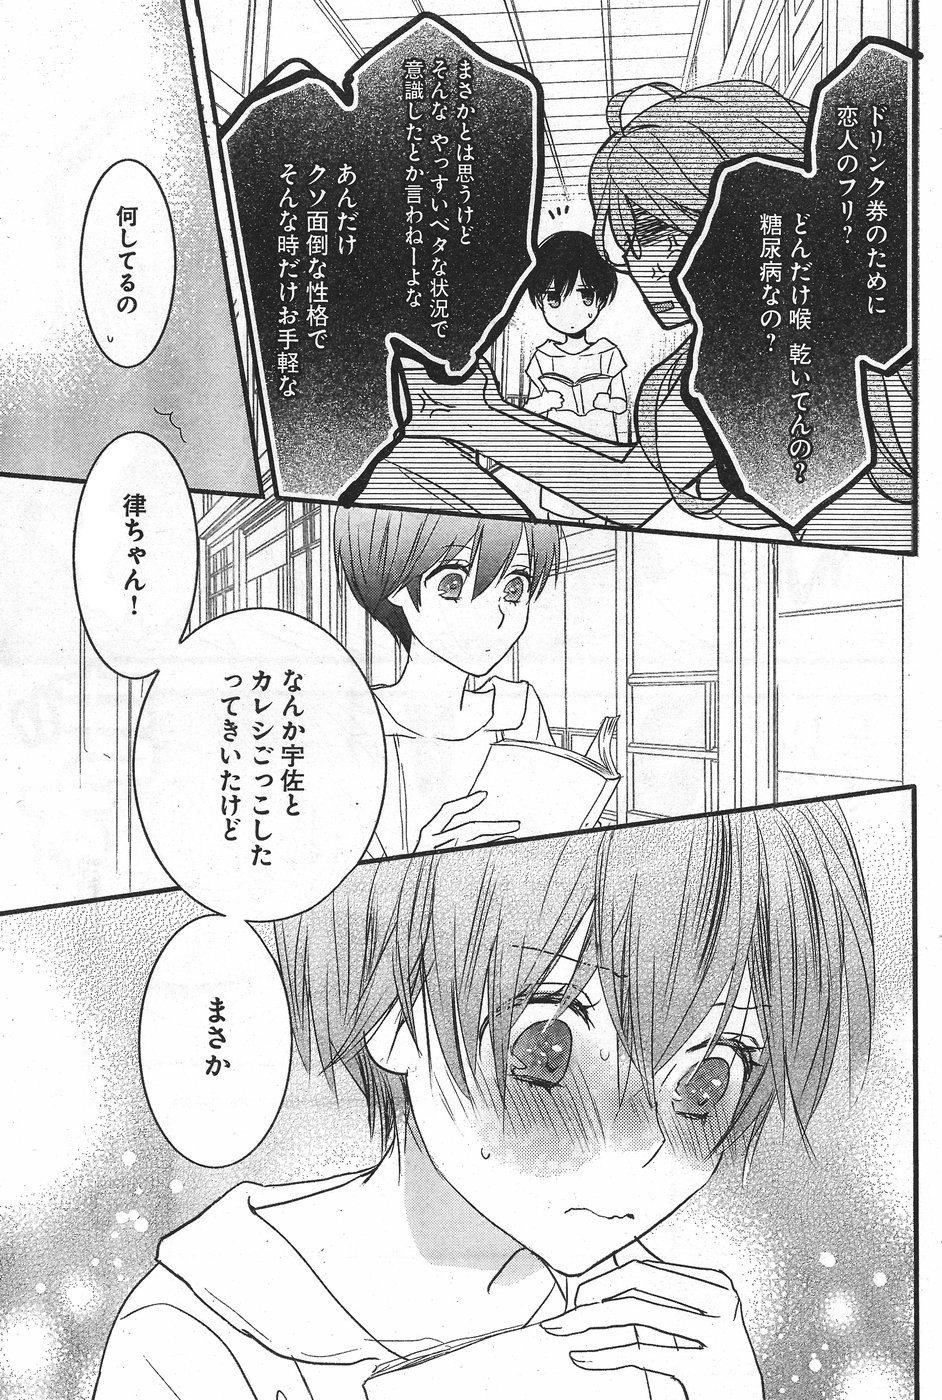 Bokura wa Minna Kawaisou - Chapter 71 - Page 5